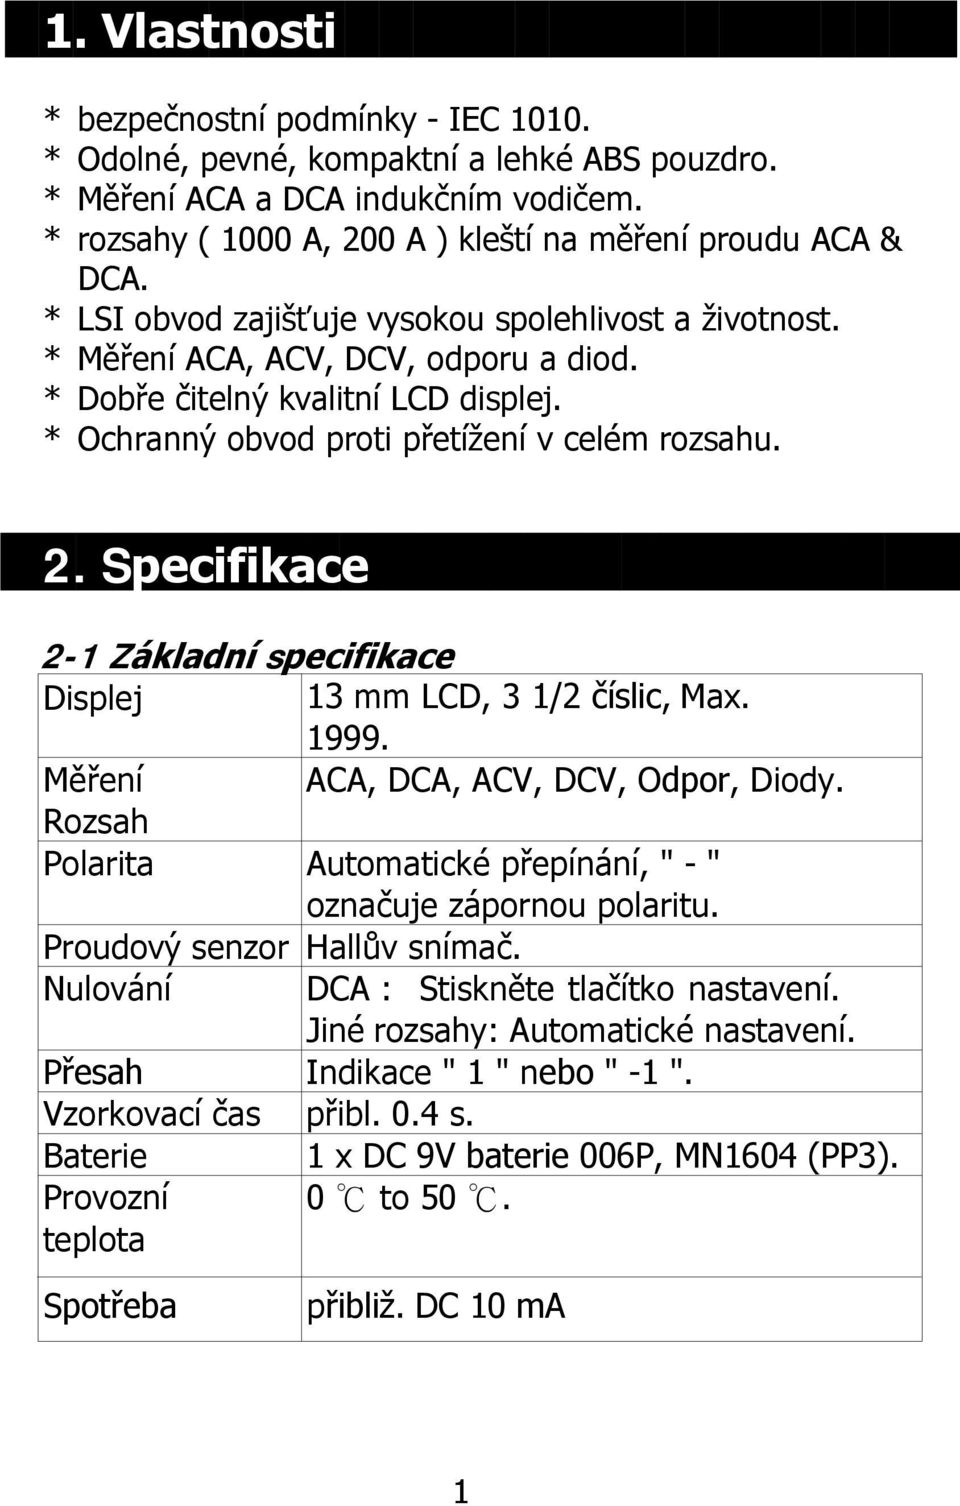 Specifikace 2-1 Základní specifikace Displej 13 mm LCD, 3 1/2 číslic, Max. 1999. Měření ACA, DCA, ACV, DCV, Odpor, Diody. Rozsah Polarita Automatické přepínání, " - " označuje zápornou polaritu.